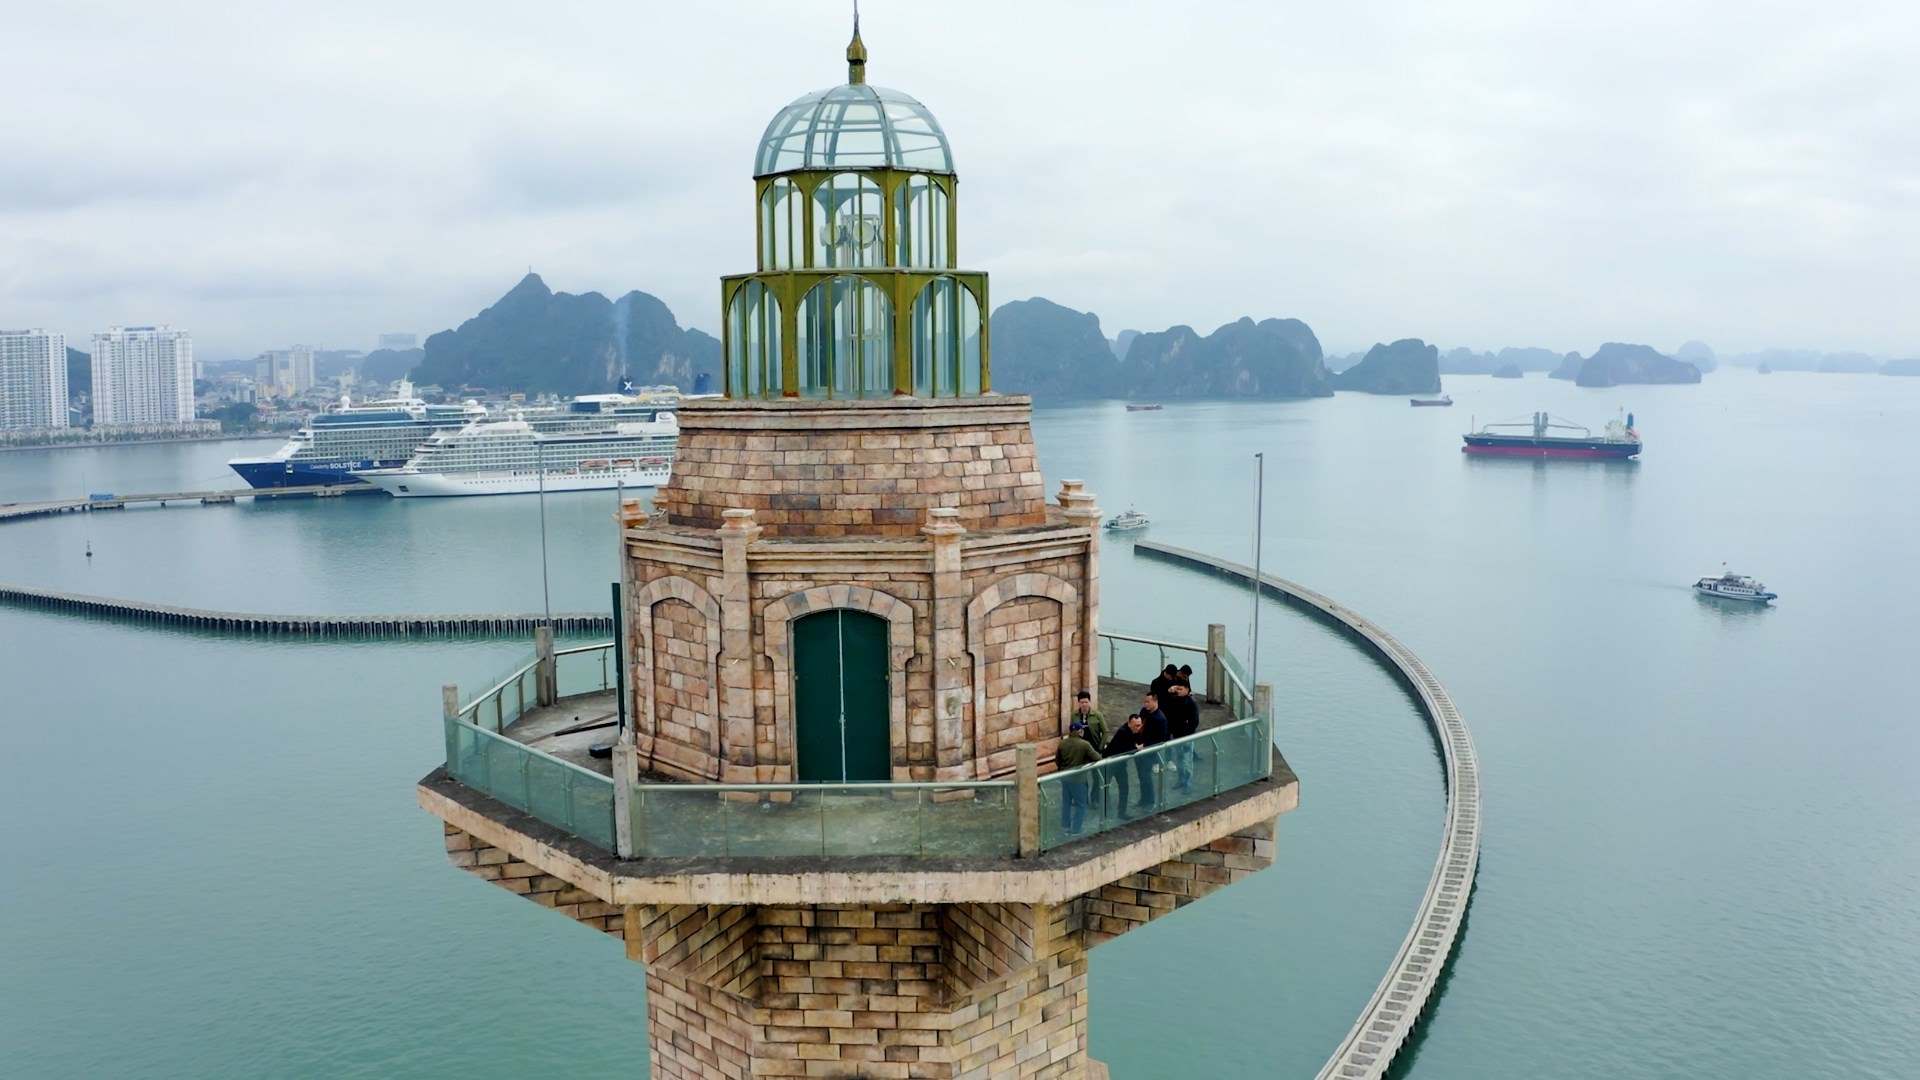 Tổ hợp khu vui chơi, giải trí xung quanh ngọn Hải đăng bên bờ vịnh Hạ Long được kỳ vọng sẽ thu hút khách quanh năm. Ảnh: Nguyễn Hùng